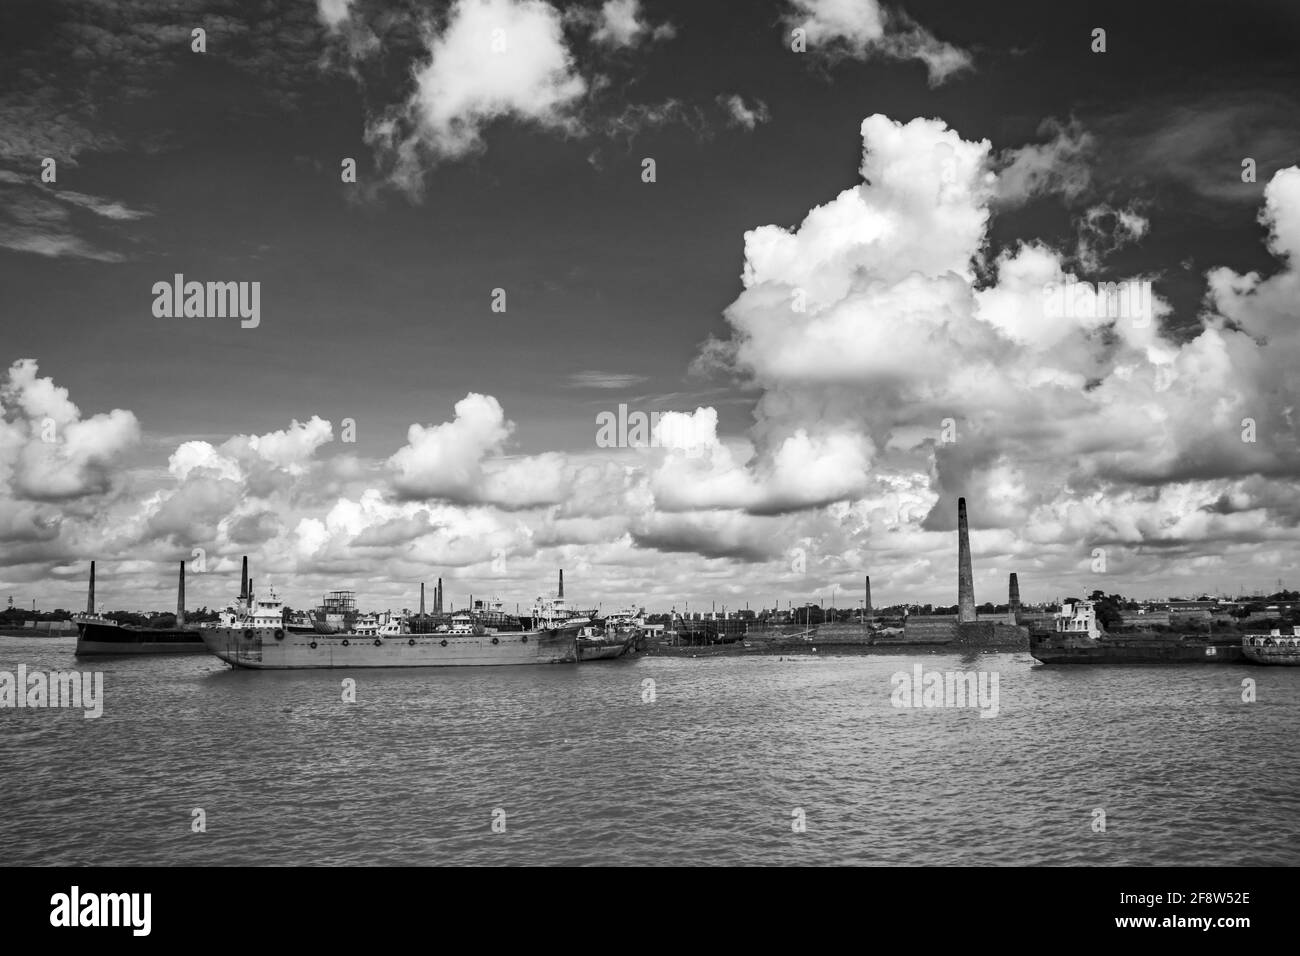 Magnifique ciel nuageux au-dessus de la rive J'ai pris cette image le 14 septembre 2020 en provenance du Bangladesh, Asie du Sud Banque D'Images